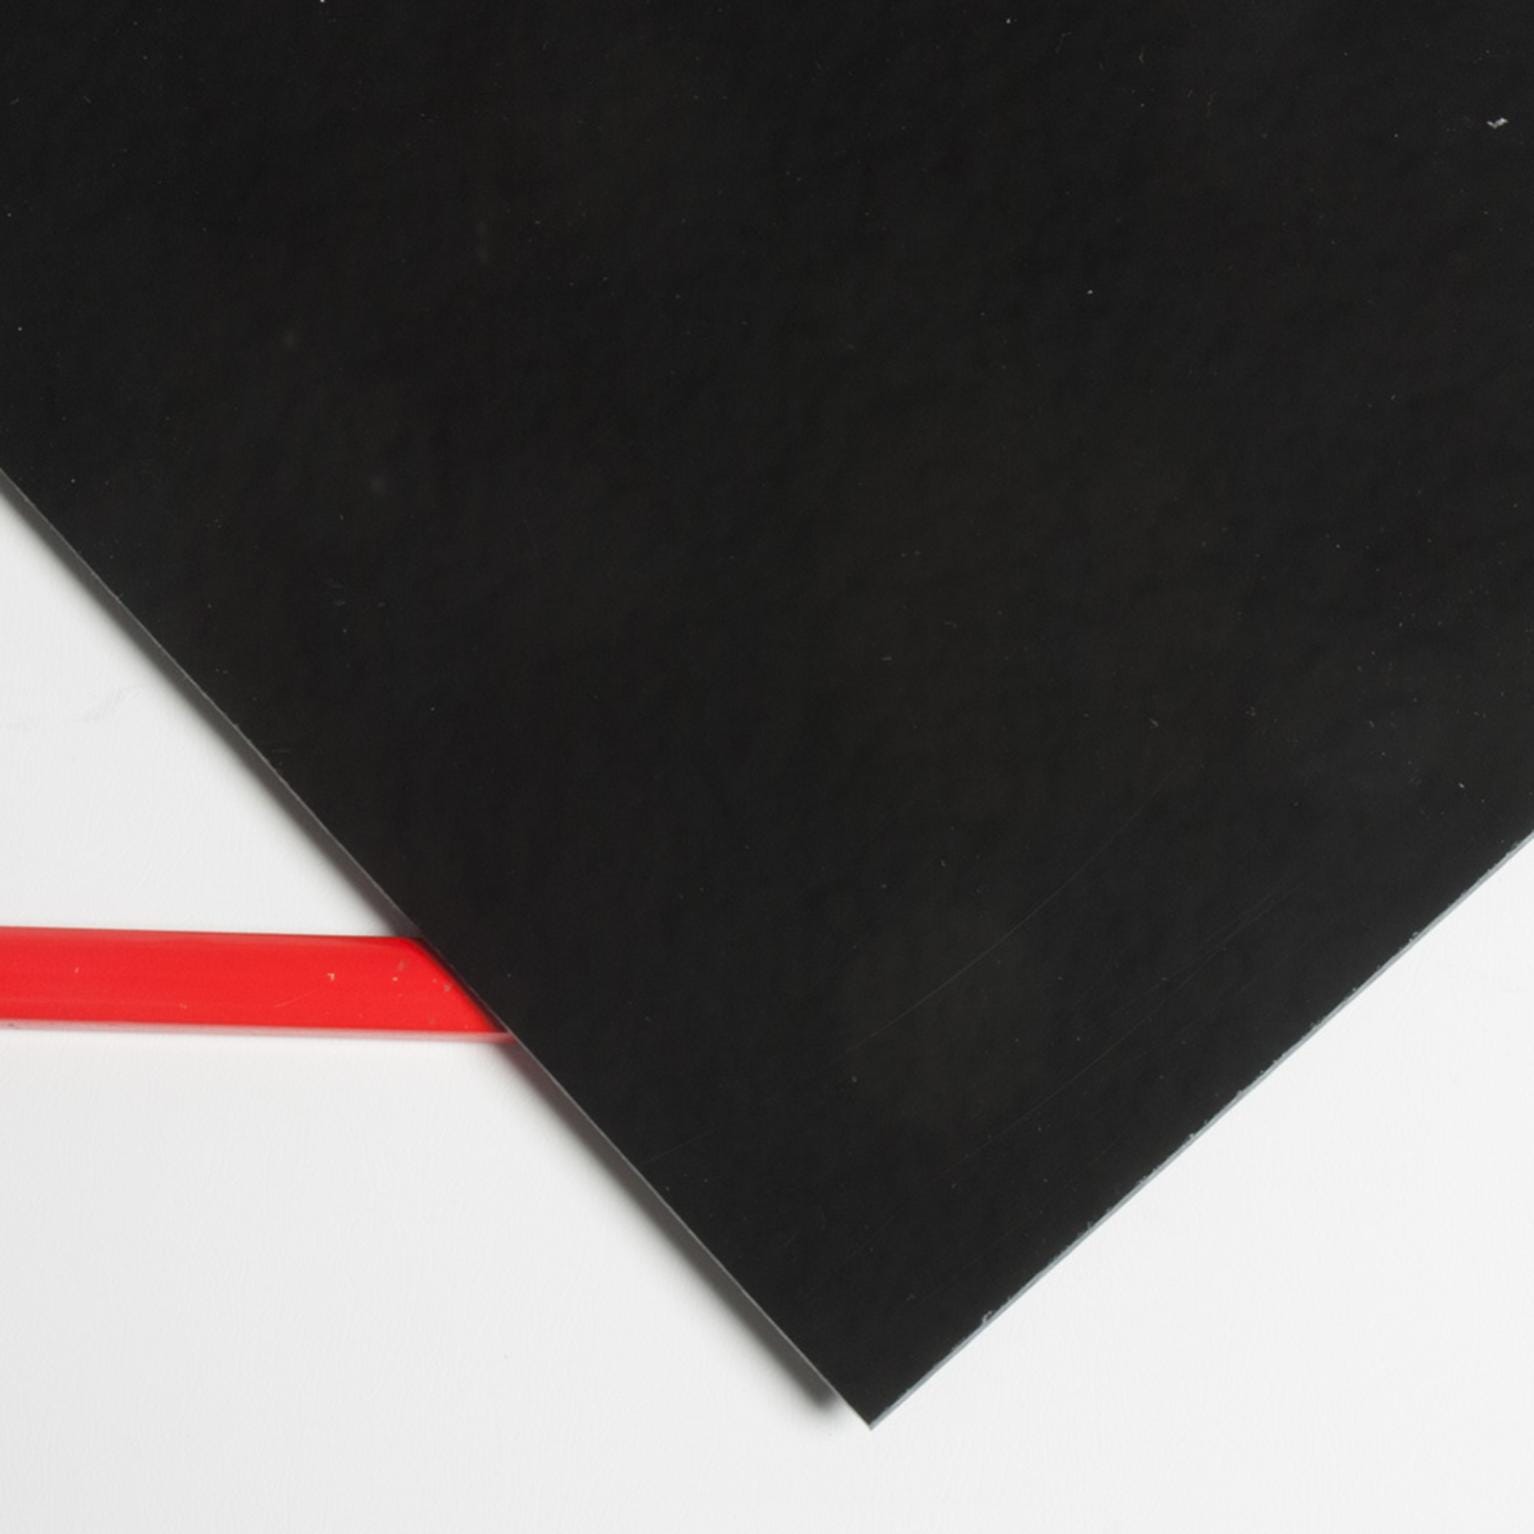 Plaques en verre acrylique, Épaisseur 3 mm, noir, noir, 1000 x 500 mm